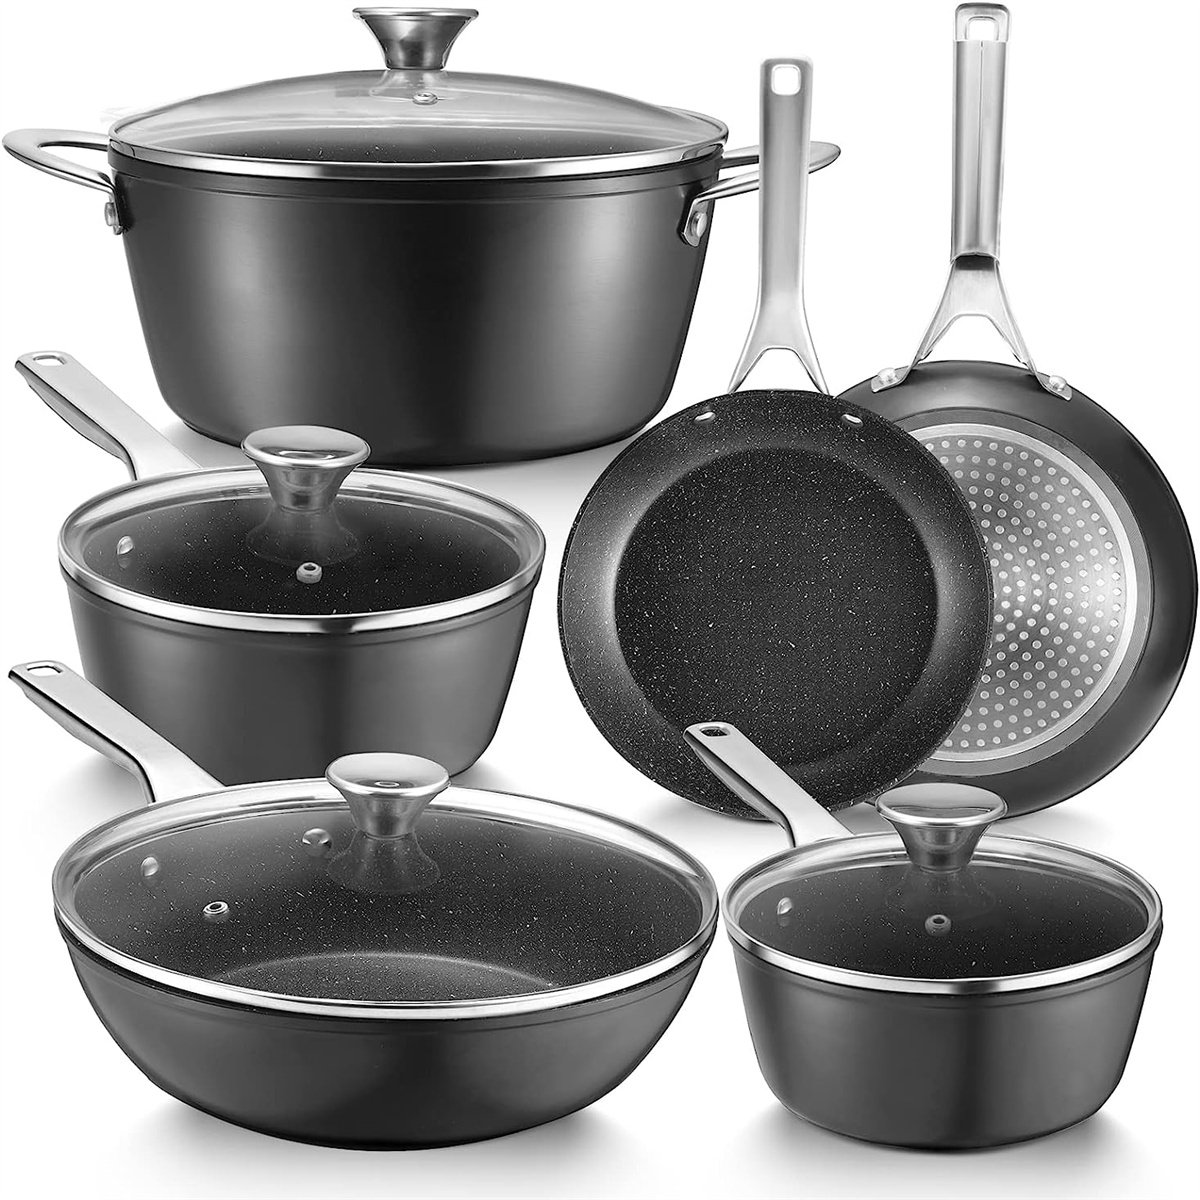 https://assets.wfcdn.com/im/76591466/compr-r85/2491/249146255/10-piece-non-stick-aluminum-cookware-set.jpg